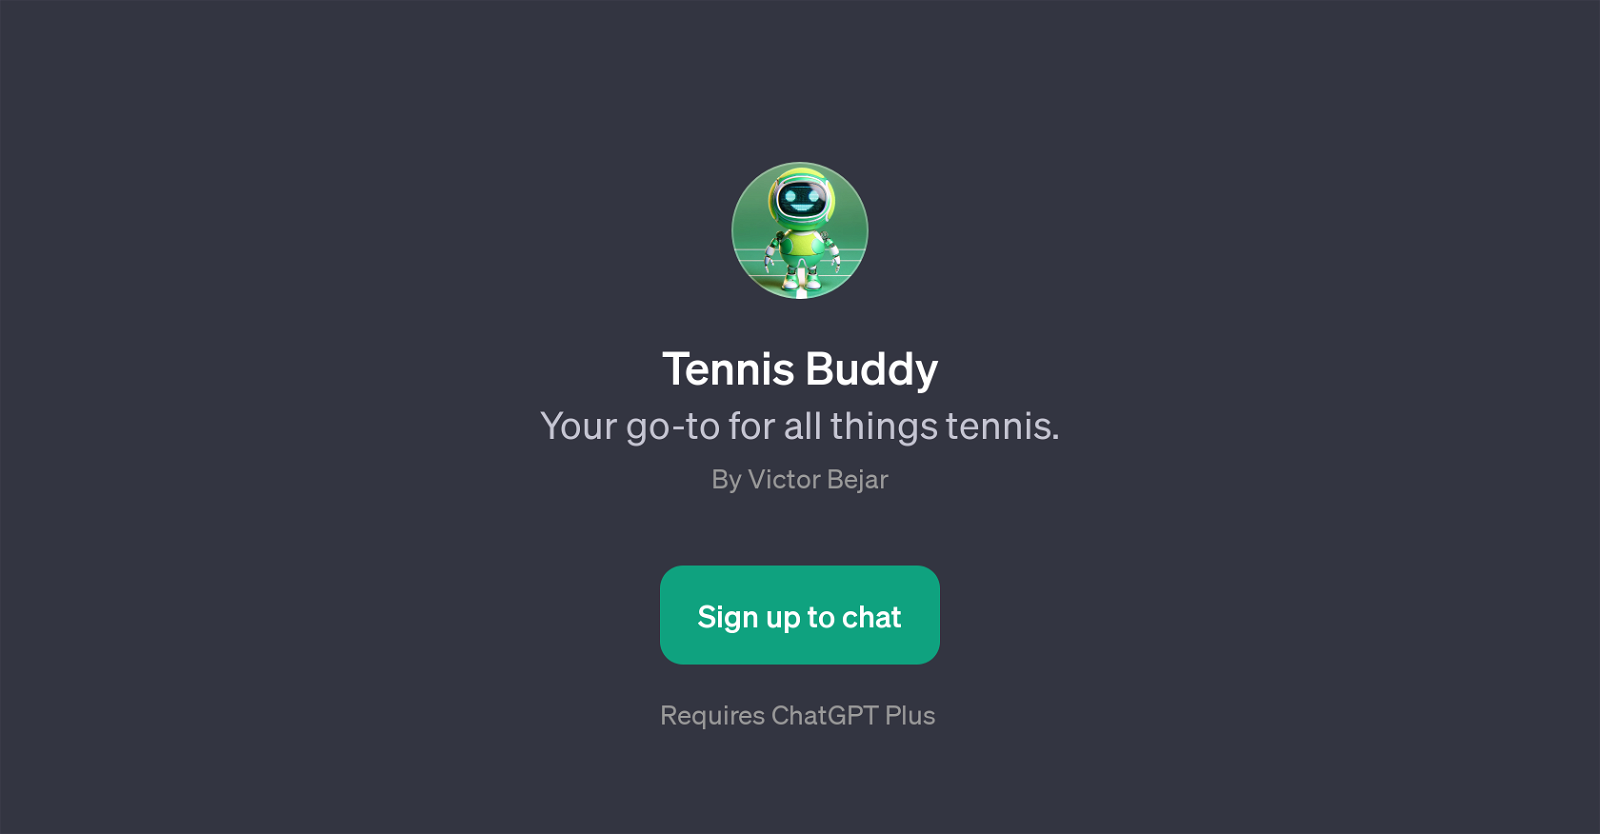 Tennis Buddy website